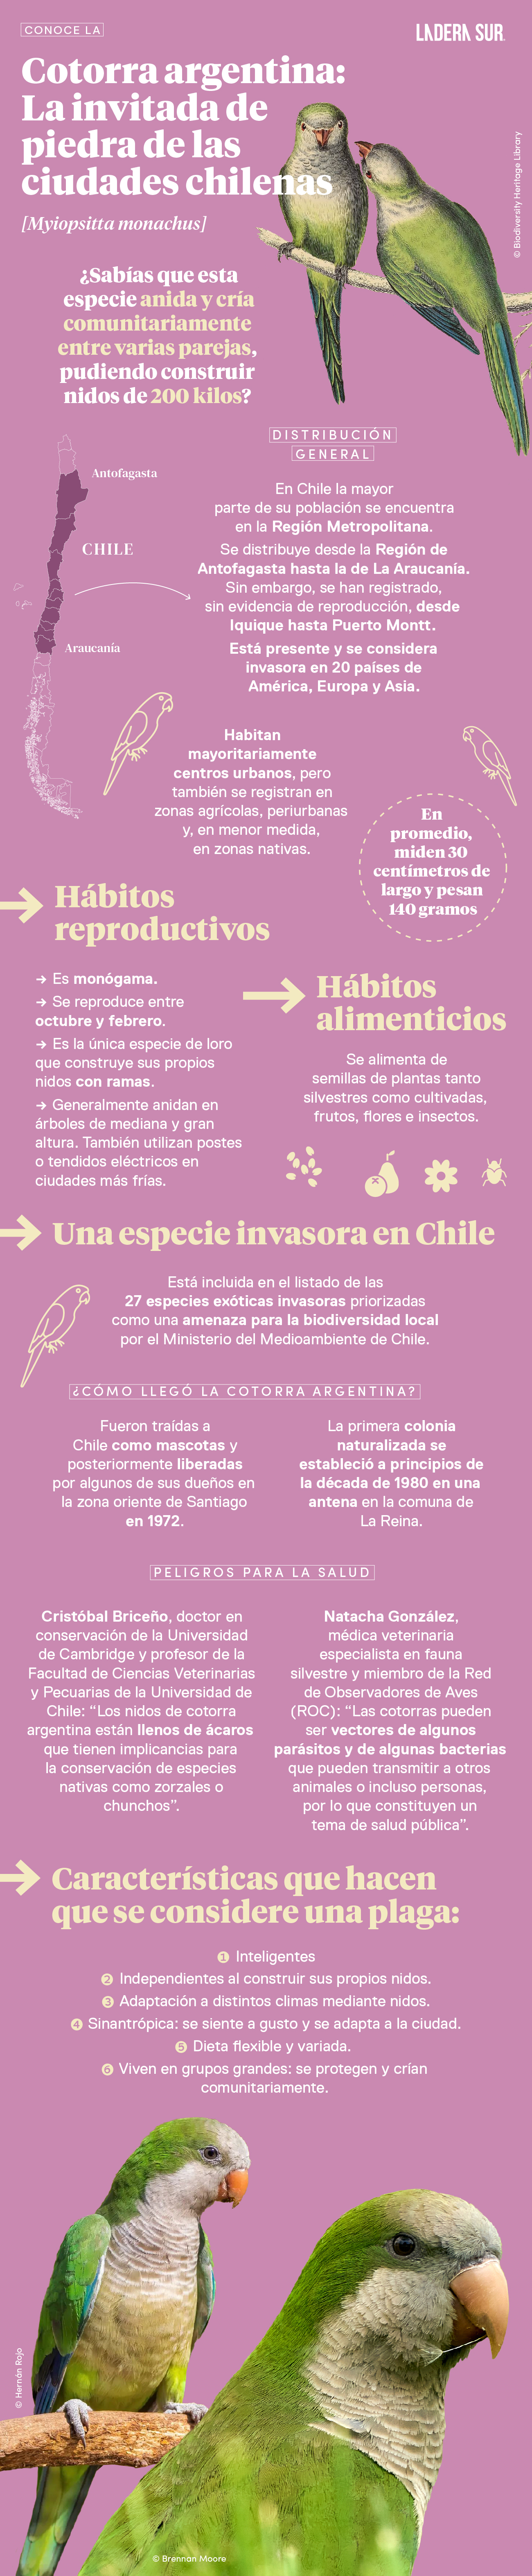 Cotorra argentina: la invitada de piedra de las ciudades chilenas